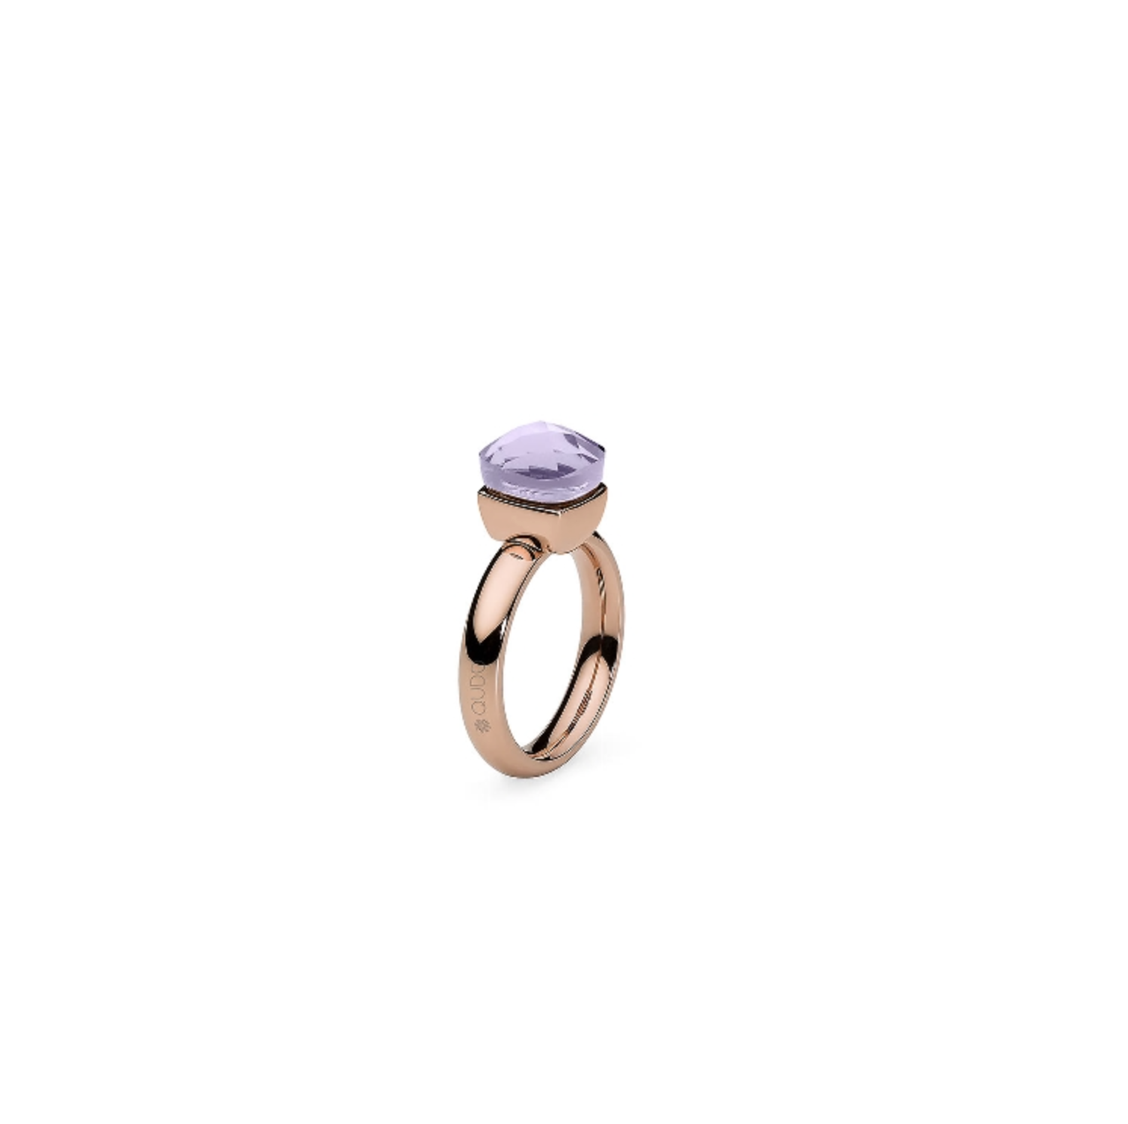 Dies ist ein Ring der Marke Qudo, Modell Firenze. Er hat eine Farbkombination aus Flieder und Roségold. Der Ring strahlt Eleganz und Klasse aus und ist ideal für besondere Anlässe oder als alltägliches Accessoire.